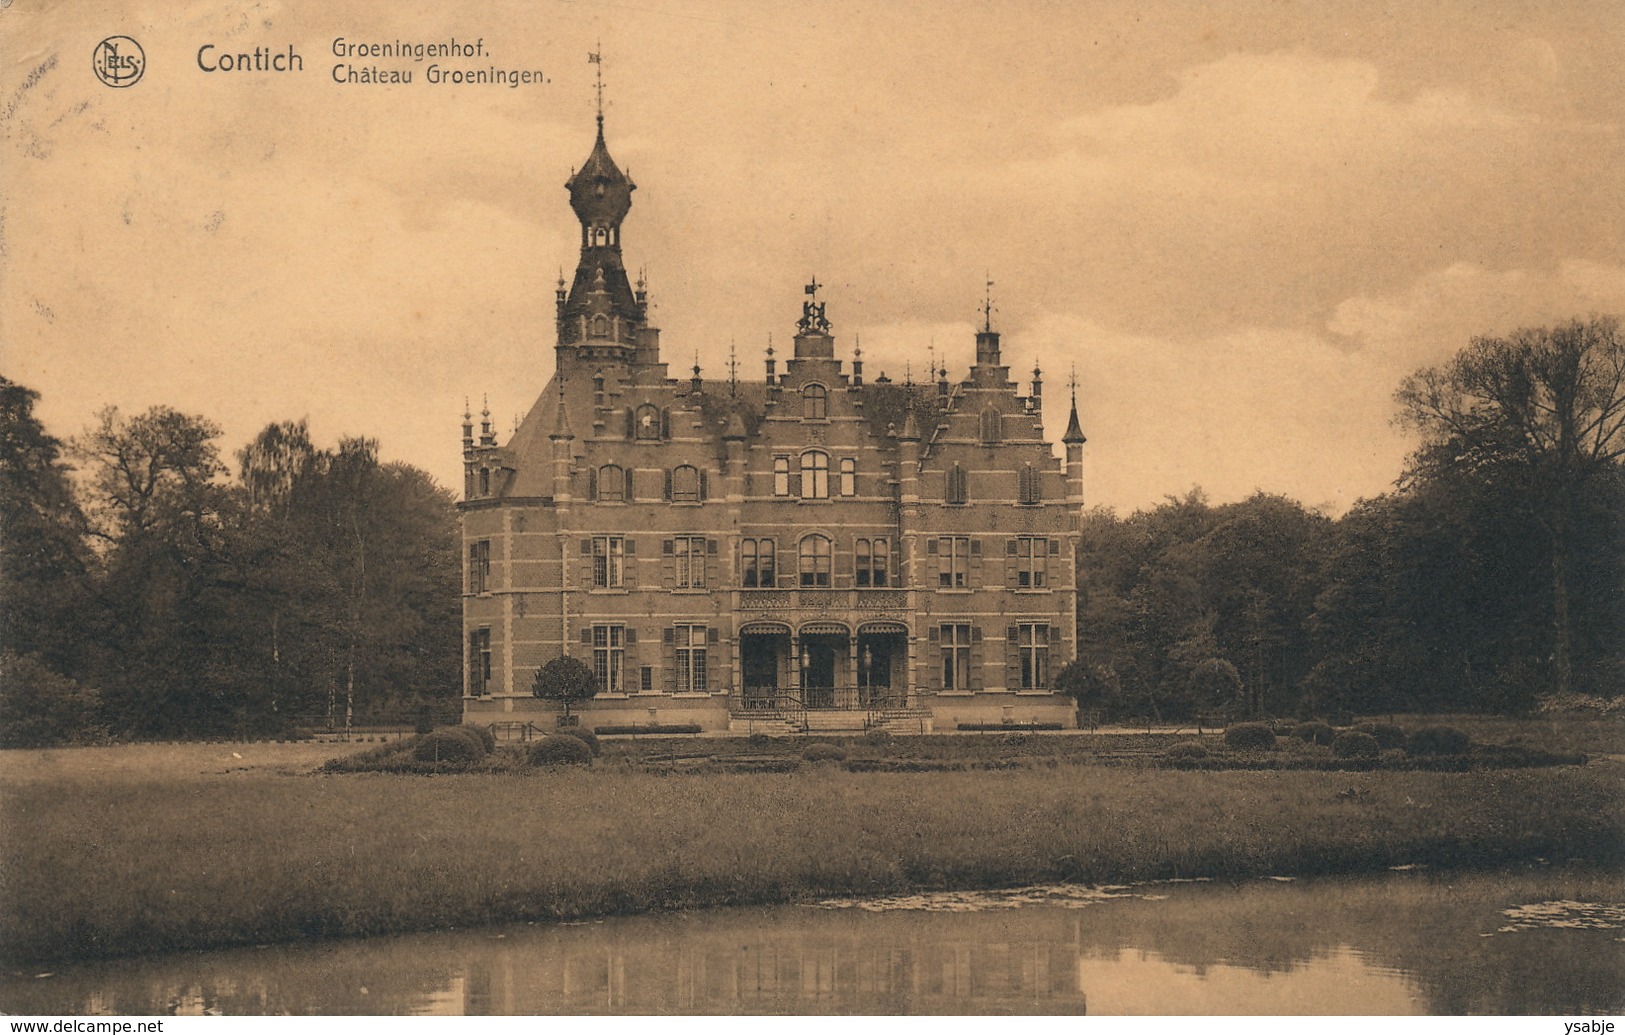 Contich Kontich : Chateau Groeningen / Groeningenhof - Kontich